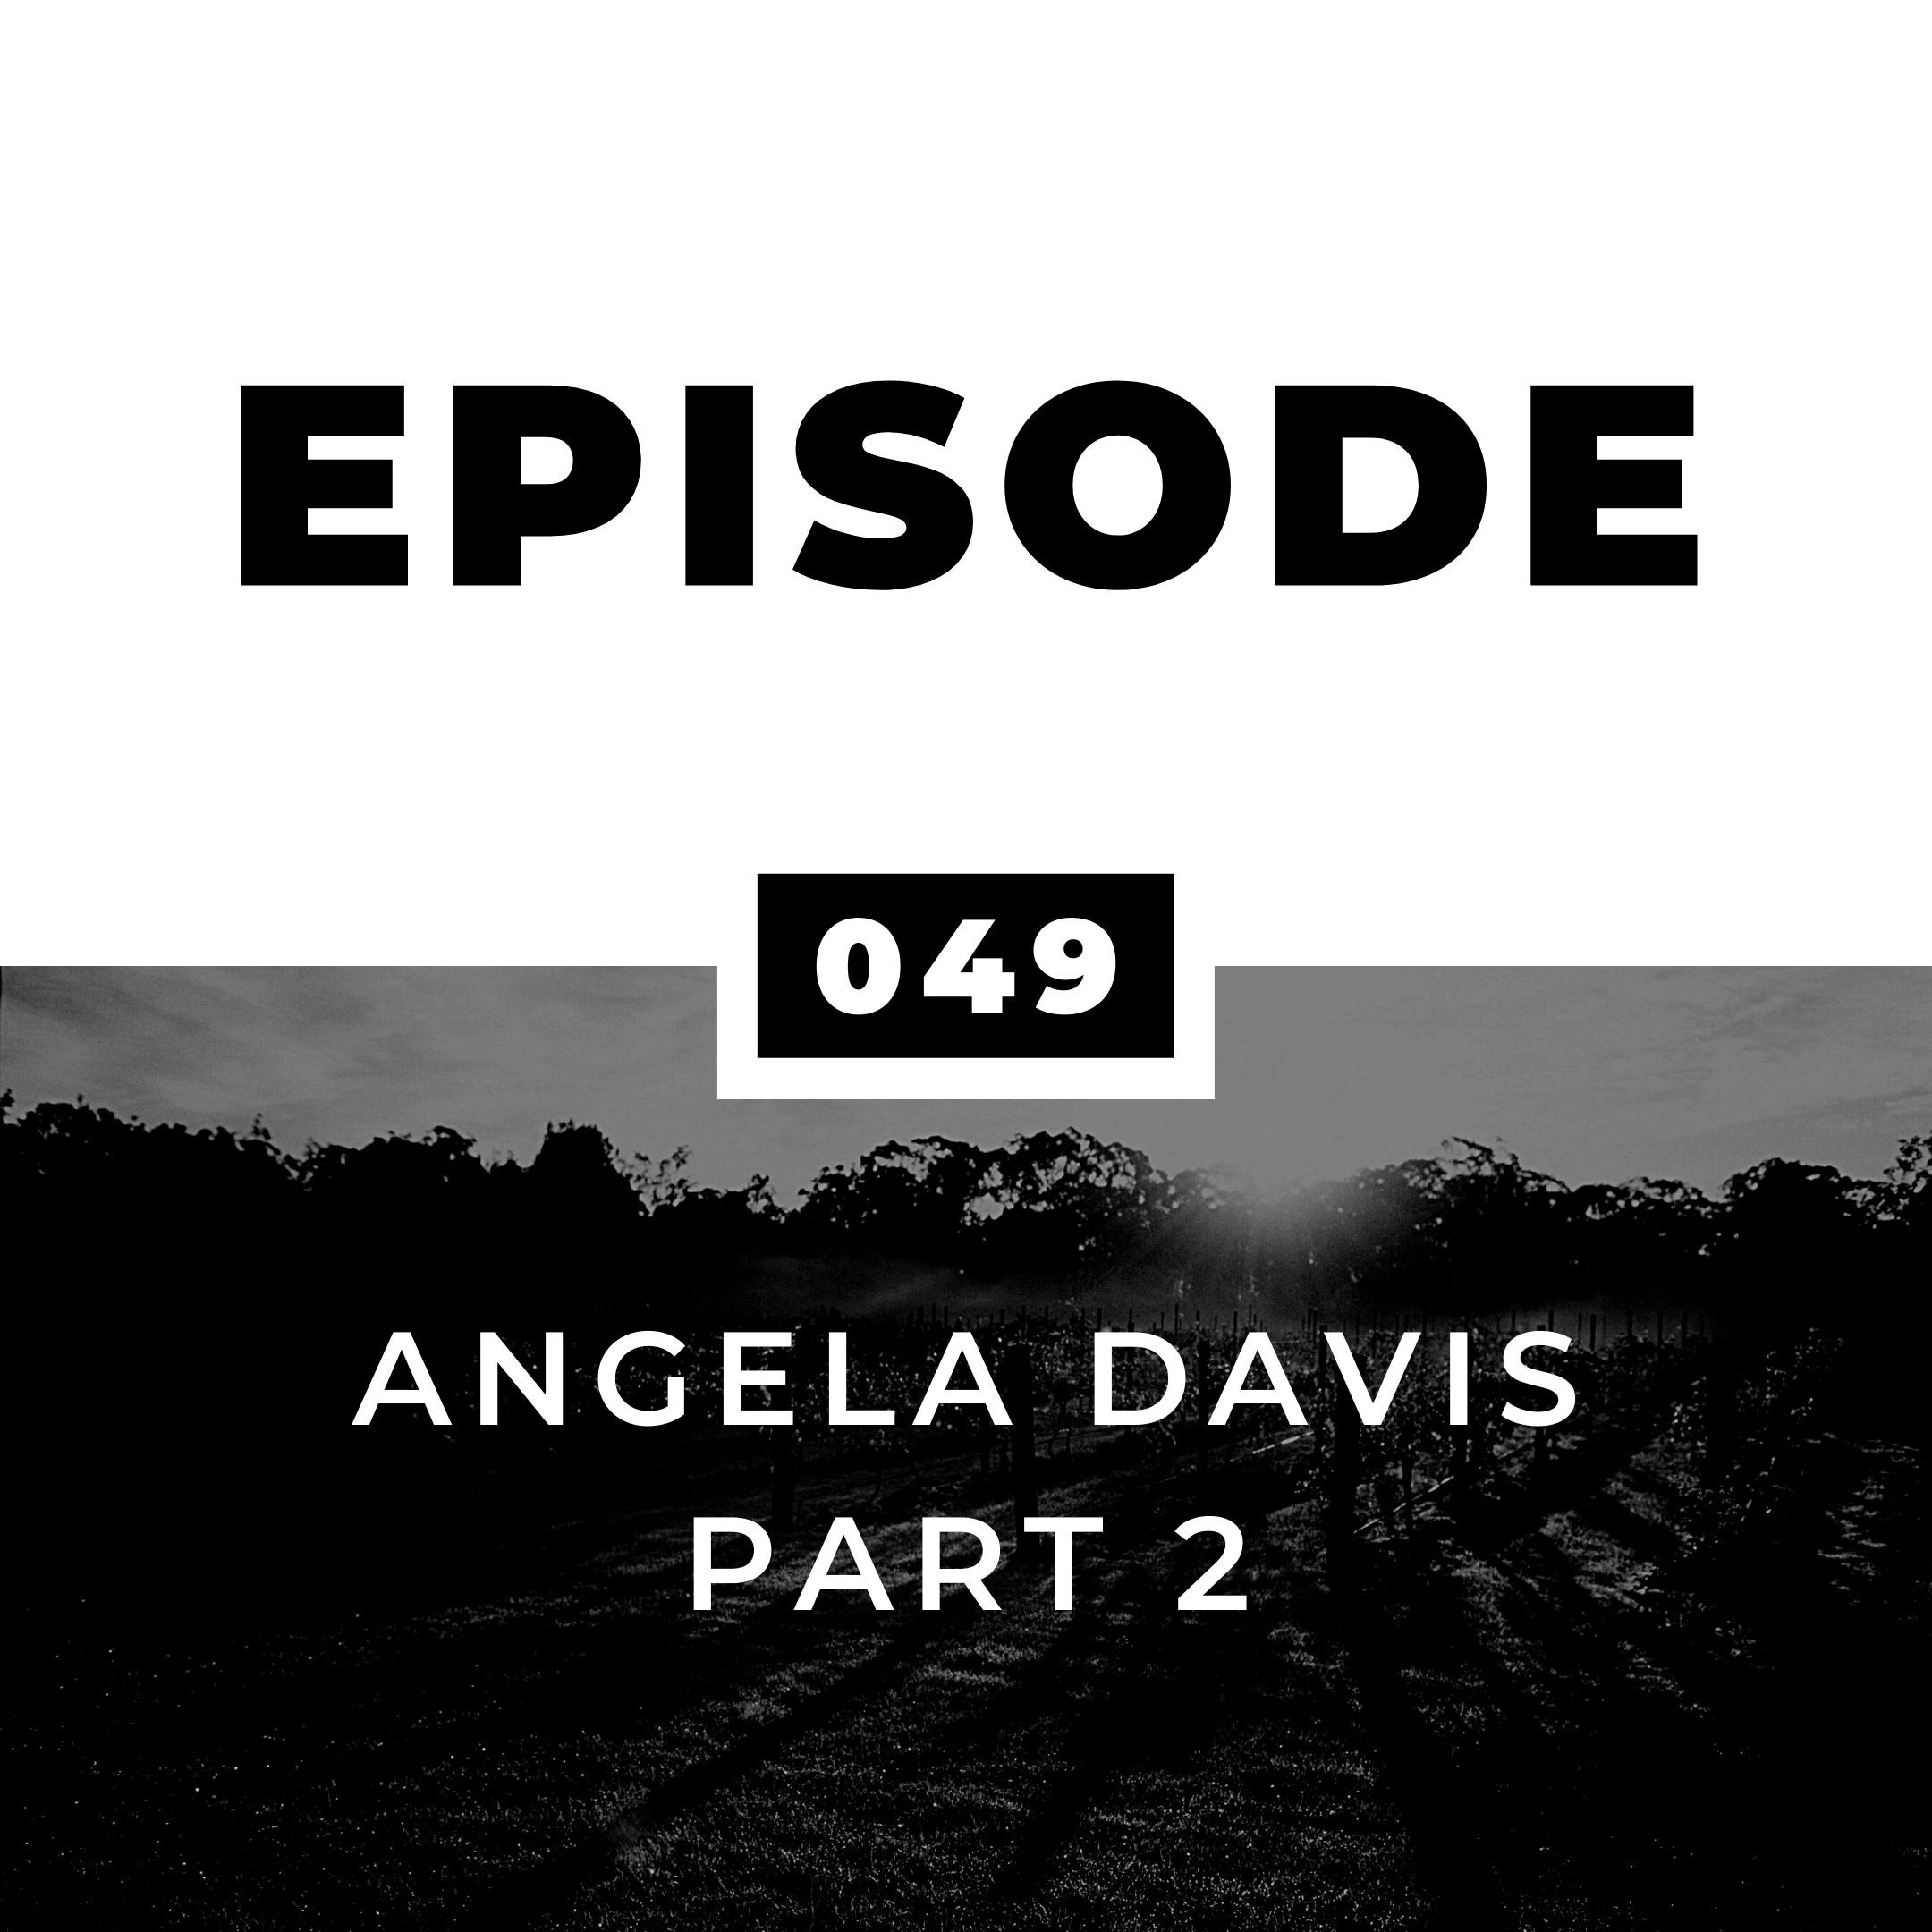 Angela Davis Part 2